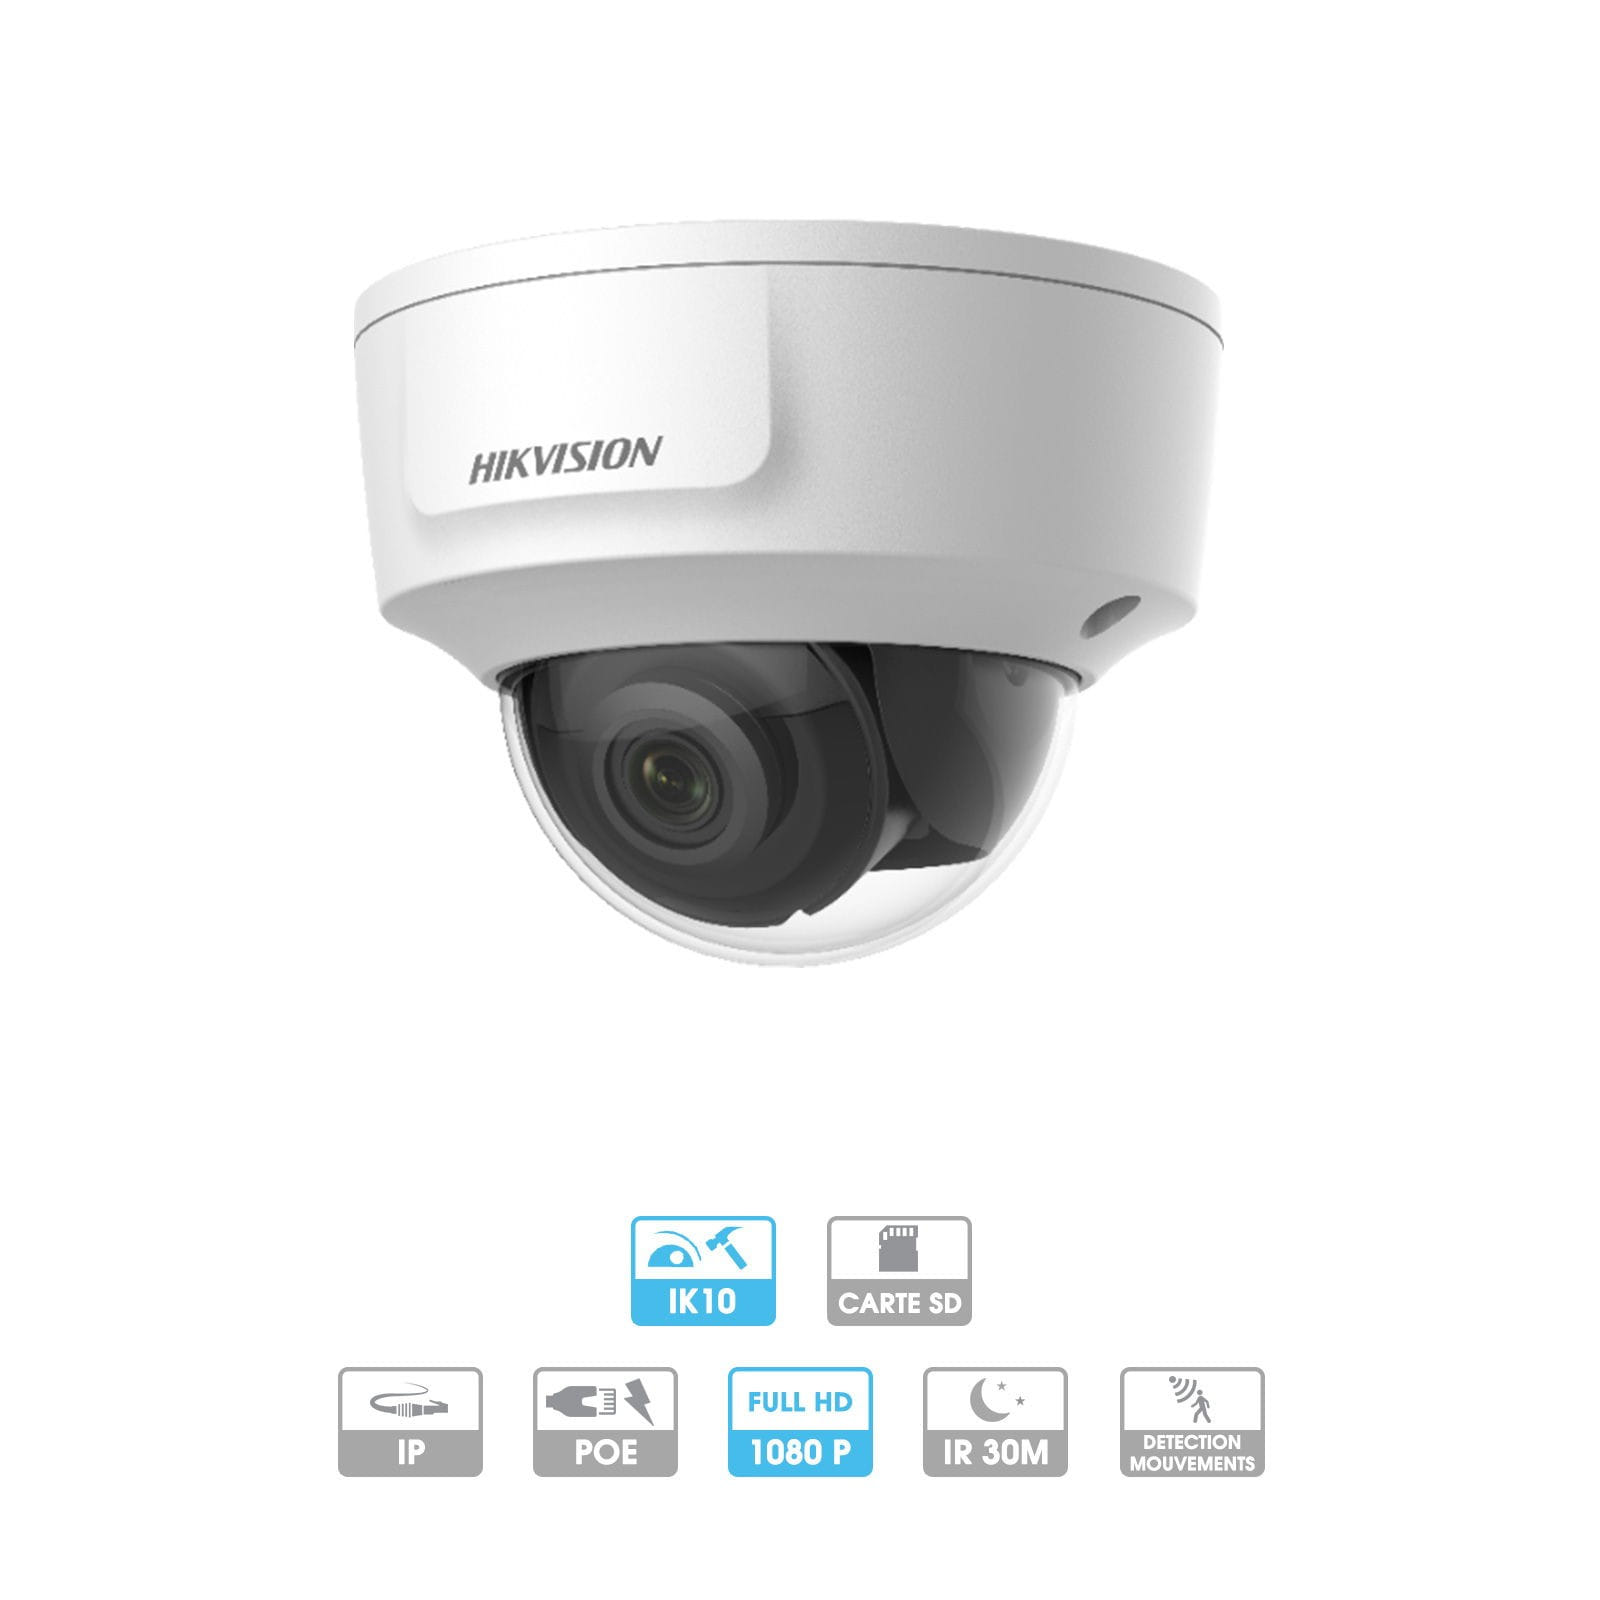 Caméra Hikvision | Dôme antivandale | 2 MP | IP PoE | Infrarouge 30 mètres | Reconnaissance faciale | Sortie directe HDMI